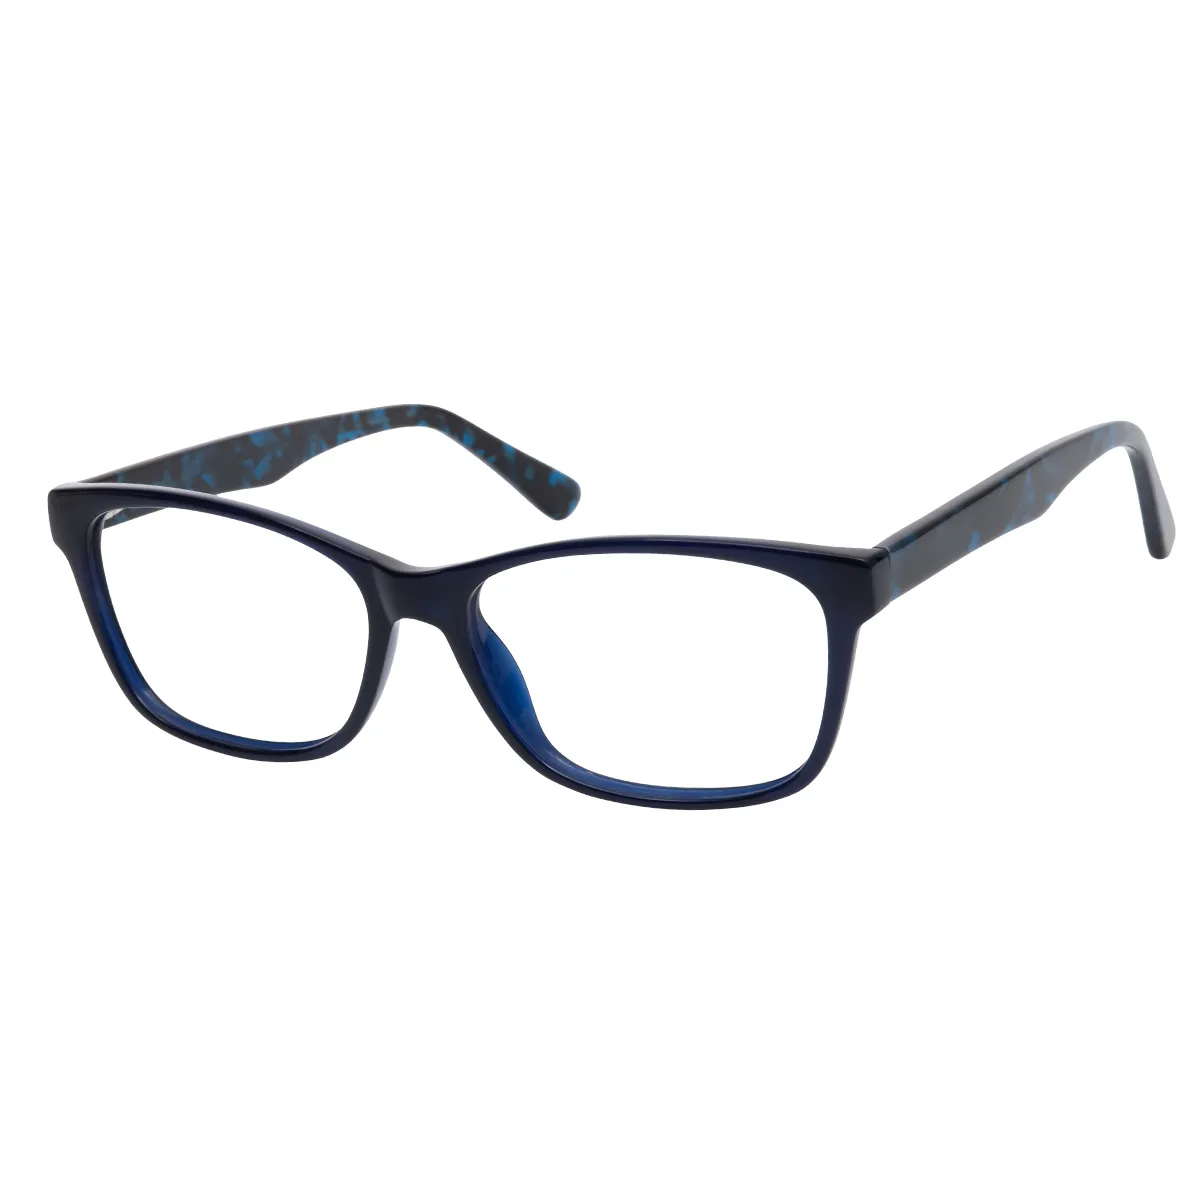 Rodrigo - Rectangle Blue-Tortoiseshell Glasses for Men